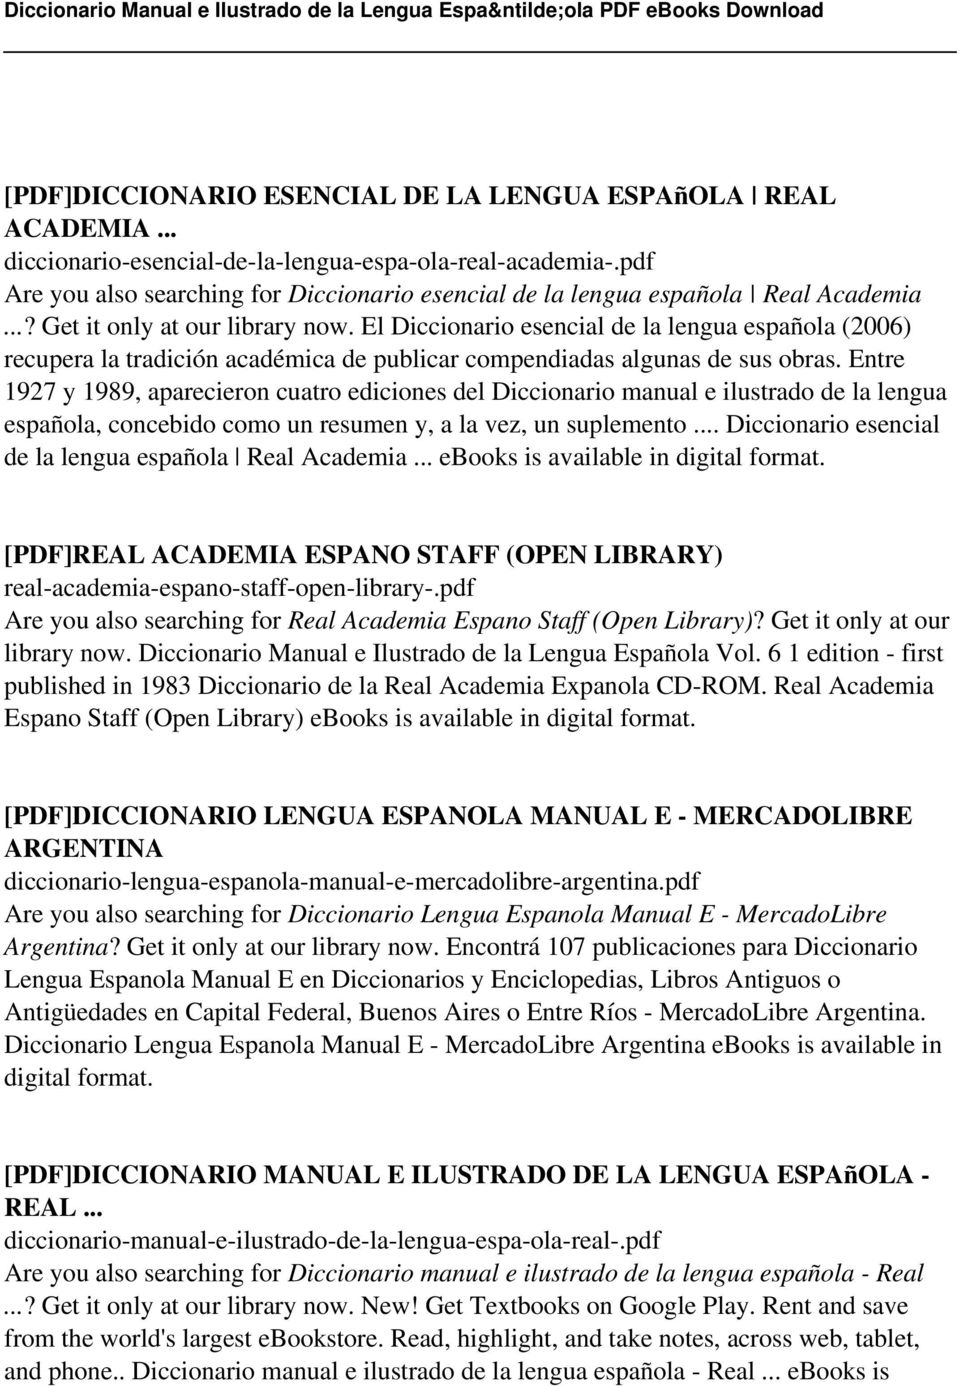 El Diccionario esencial de la lengua española (2006) recupera la tradición académica de publicar compendiadas algunas de sus obras.